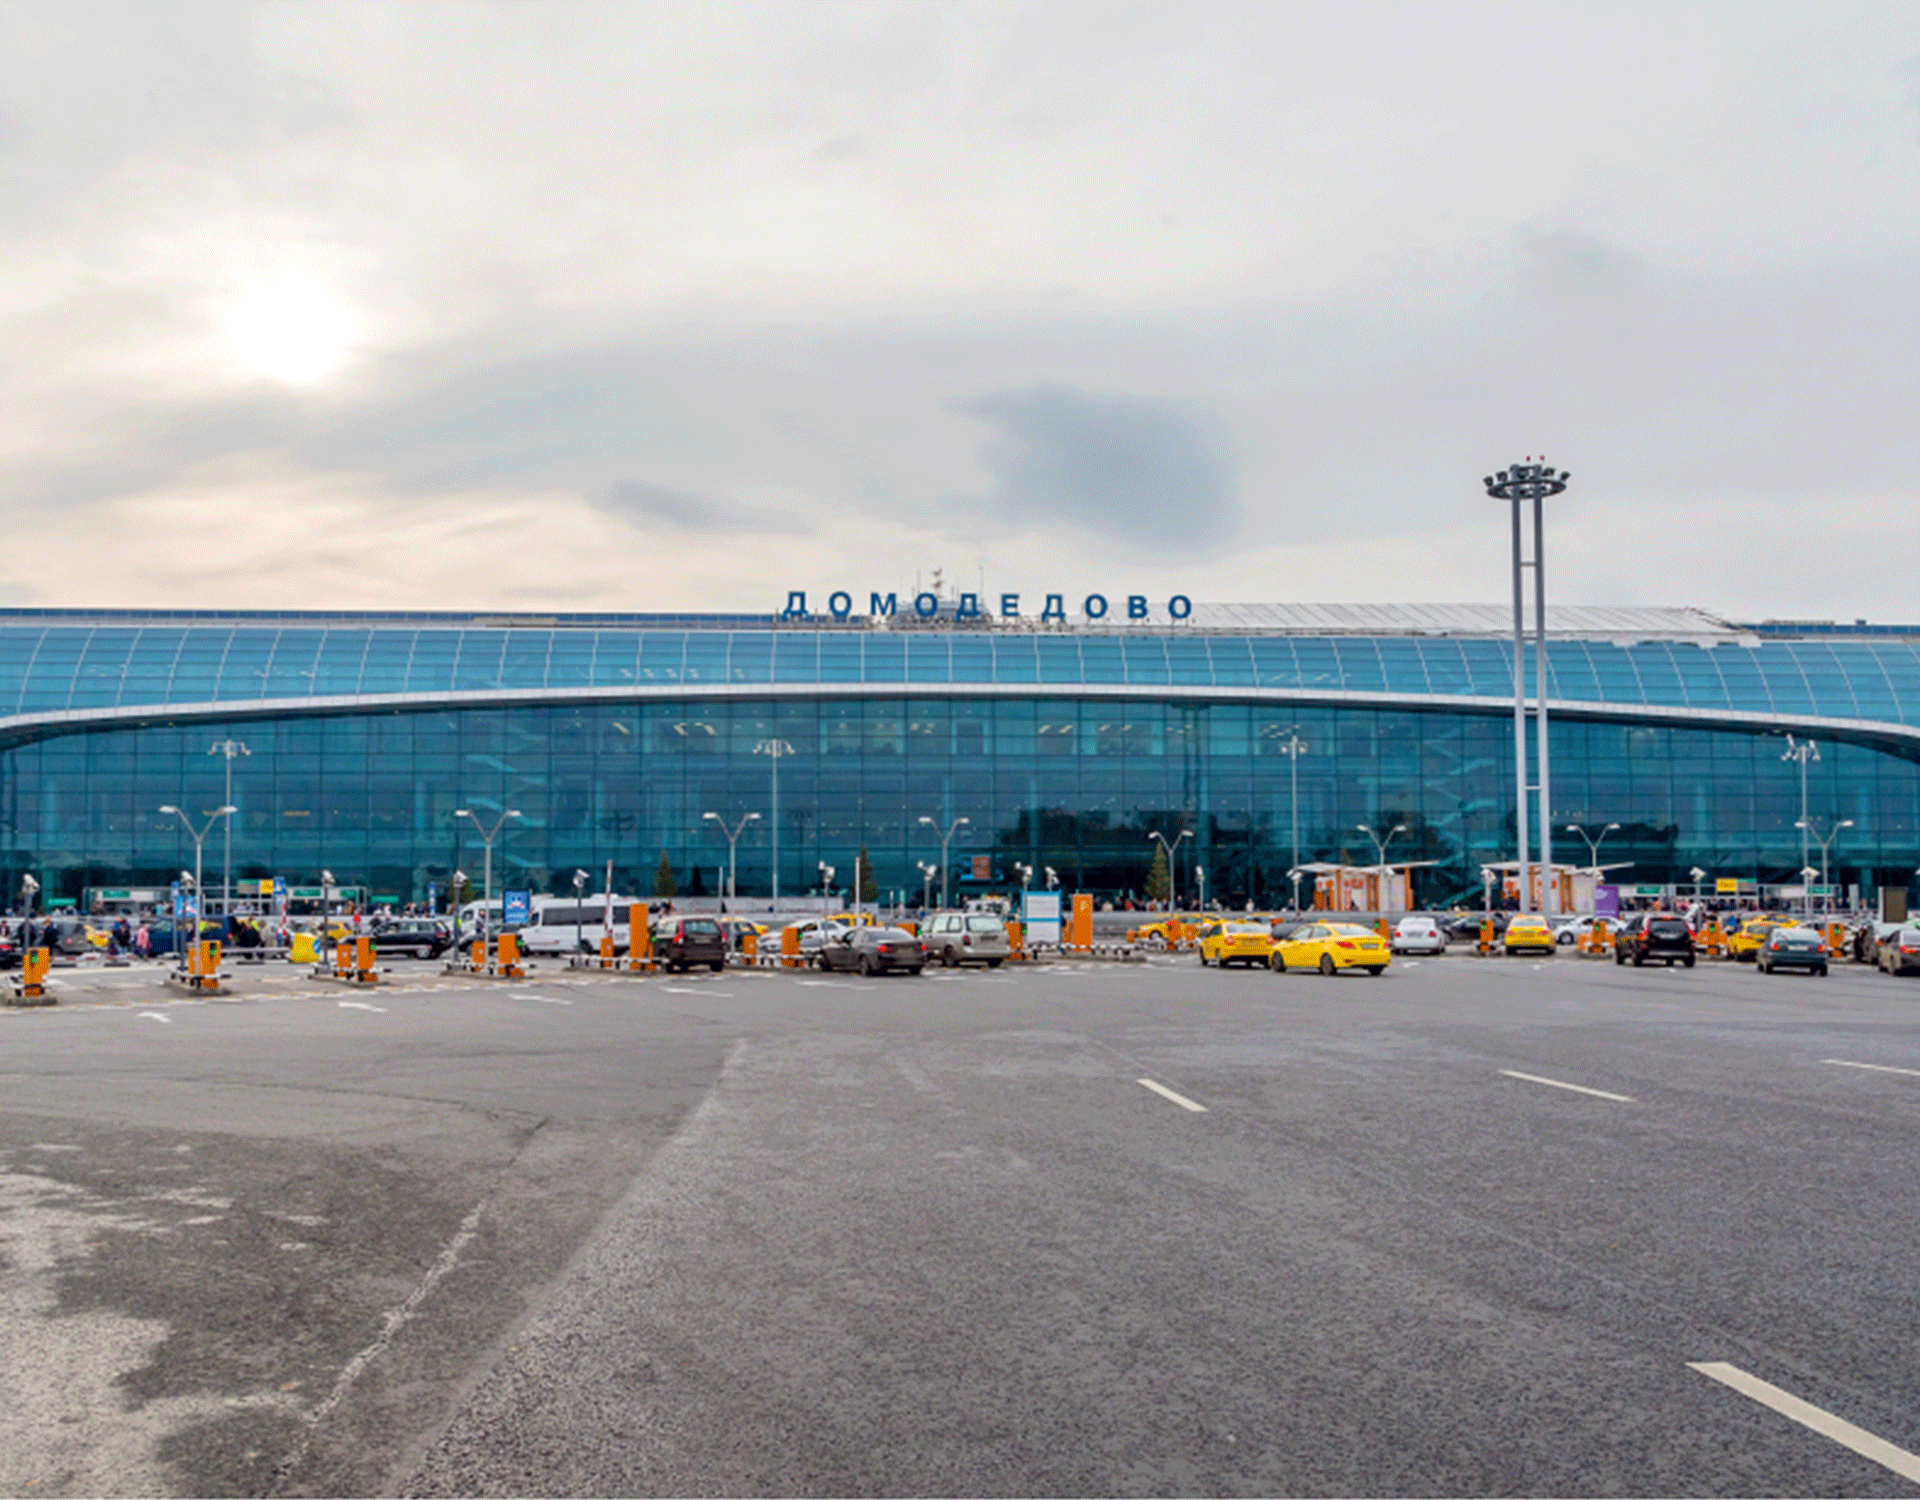 Αεροδρόμιο "Domodedovo"